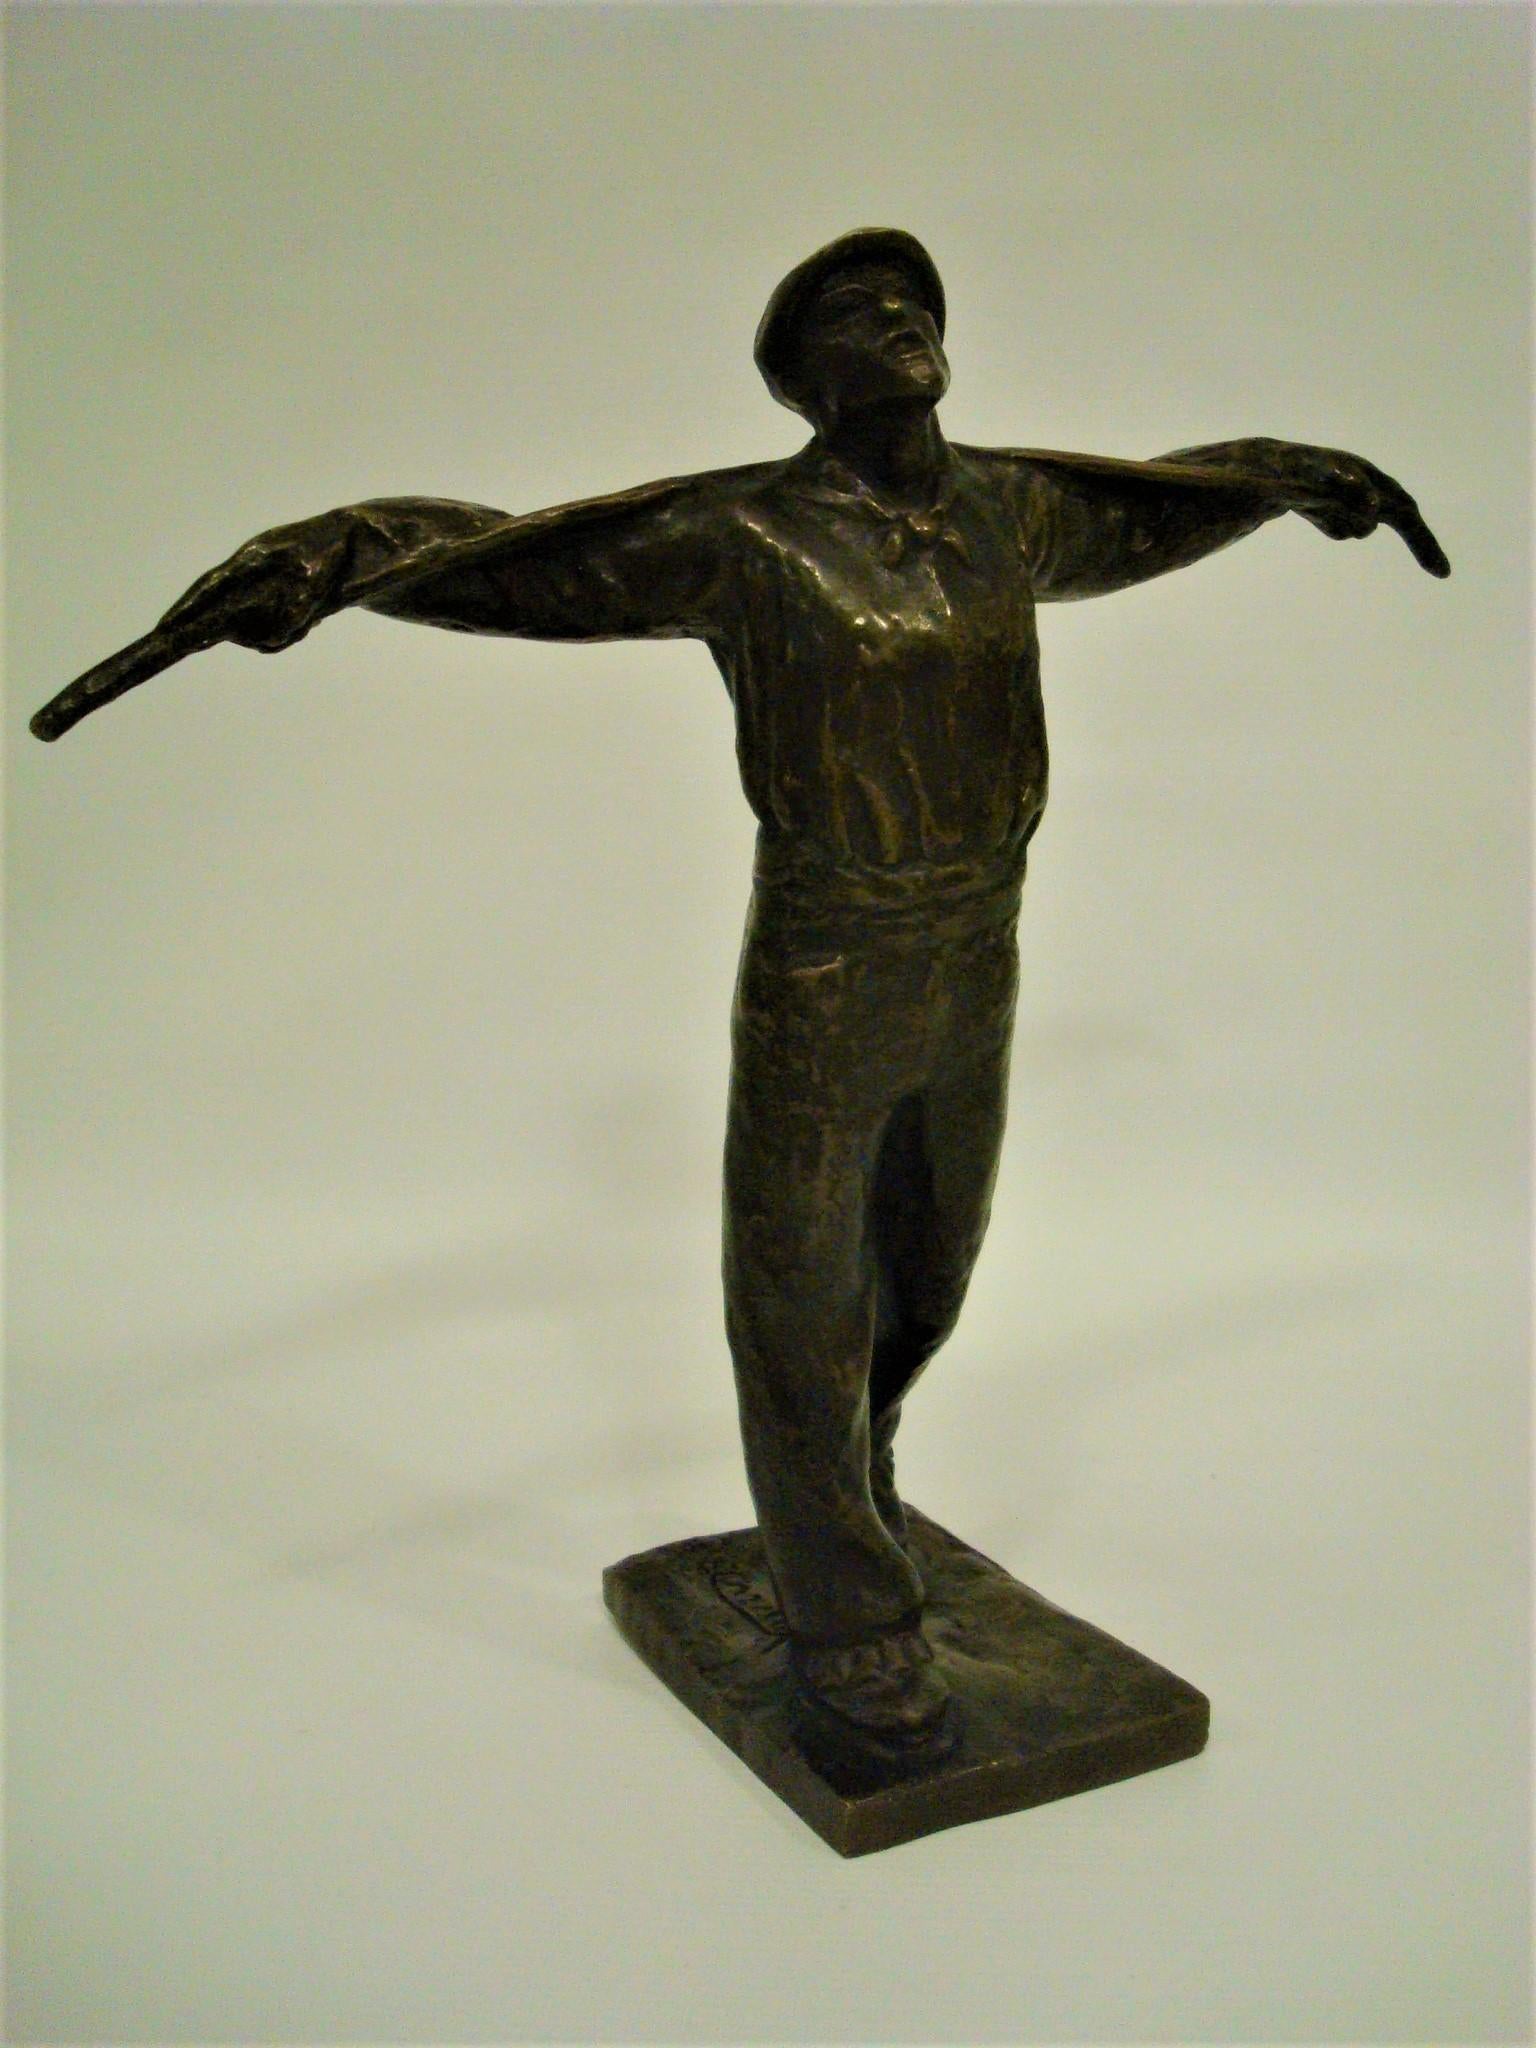 Bronzeskulptur eines Art-Déco-Arbeiters. Edouard Cazaux. Frankreich 1920er Jahre.
Edouard Cazaux ist einer der wichtigsten Künstler, die mit der französischen Art-déco-Bewegung in Verbindung gebracht werden. Er war Bildhauer und Keramiker und